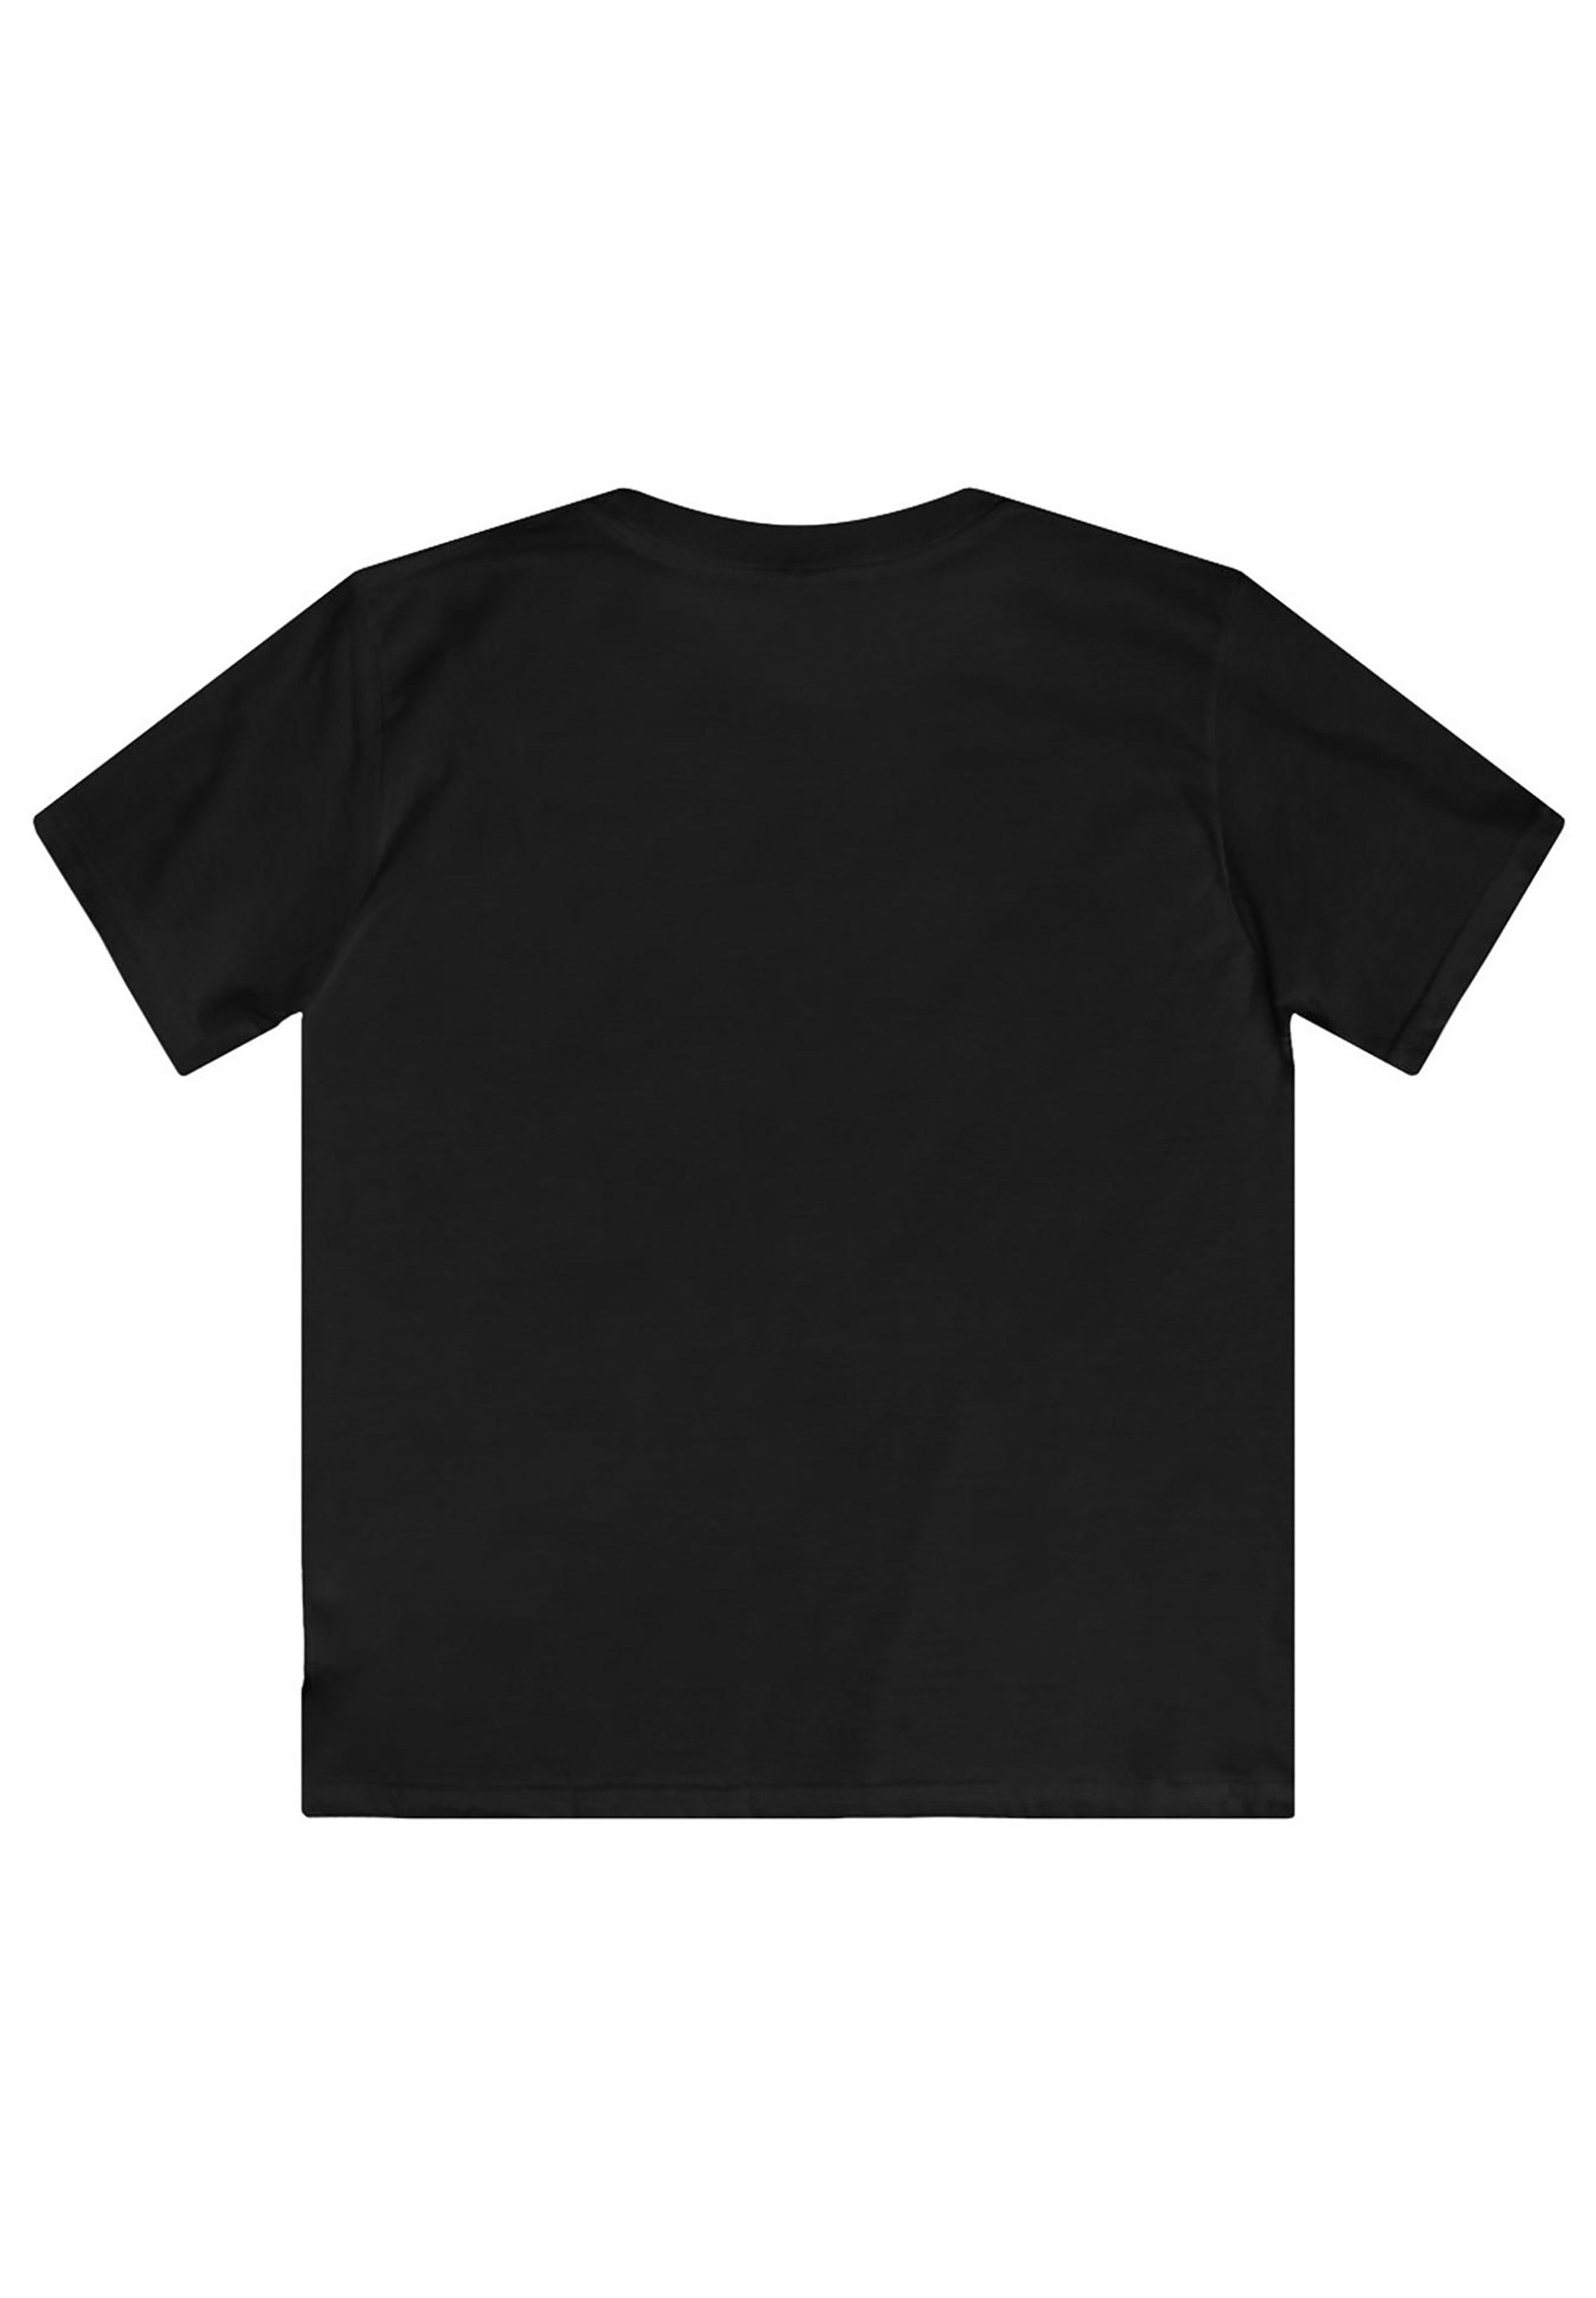 Kinder,Premium Paw Unisex Patrol Rubble Merch,Jungen,Mädchen,Bedruckt F4NT4STIC schwarz T-Shirt